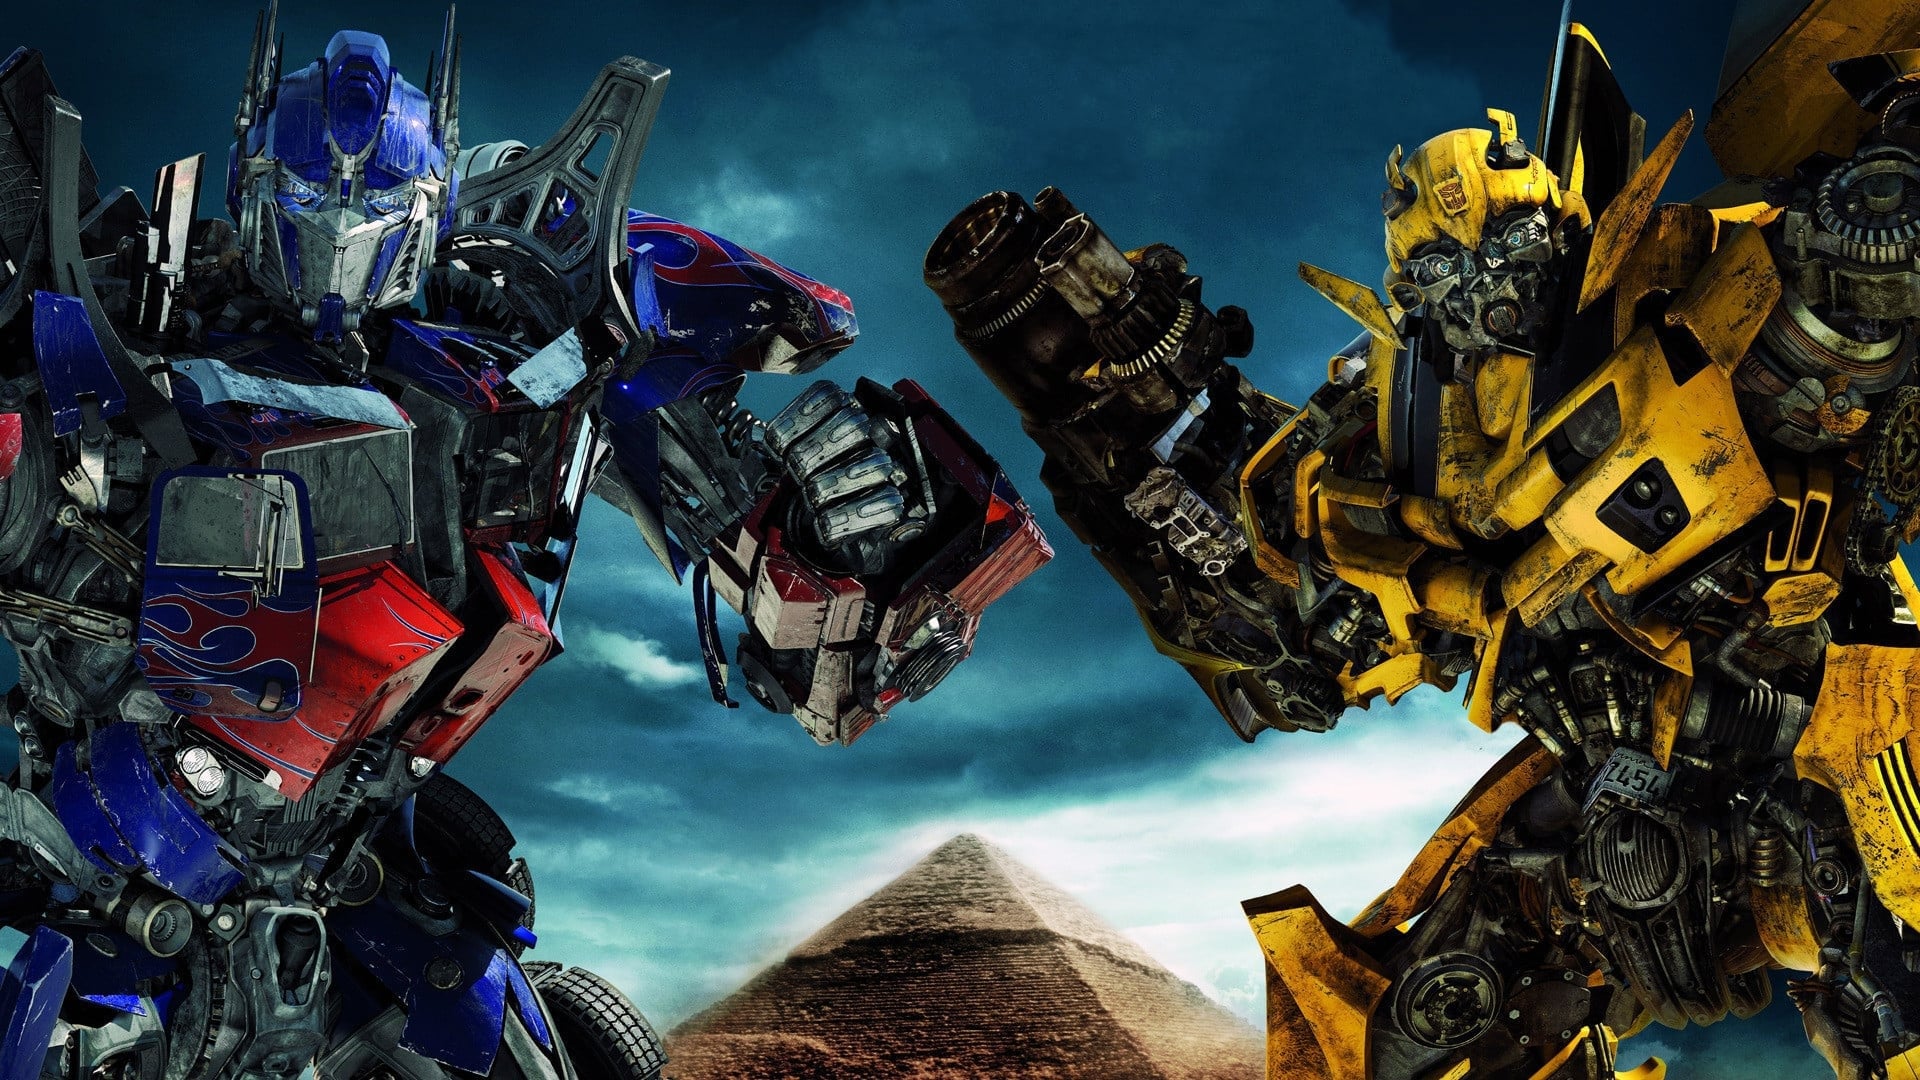 ทรานส์ฟอร์เมอร์ส อภิมหาสงครามแค้น Transformers 2 Revenge Of The Fallen ออนไลน์โดยสมบูรณ์ในปี 2009